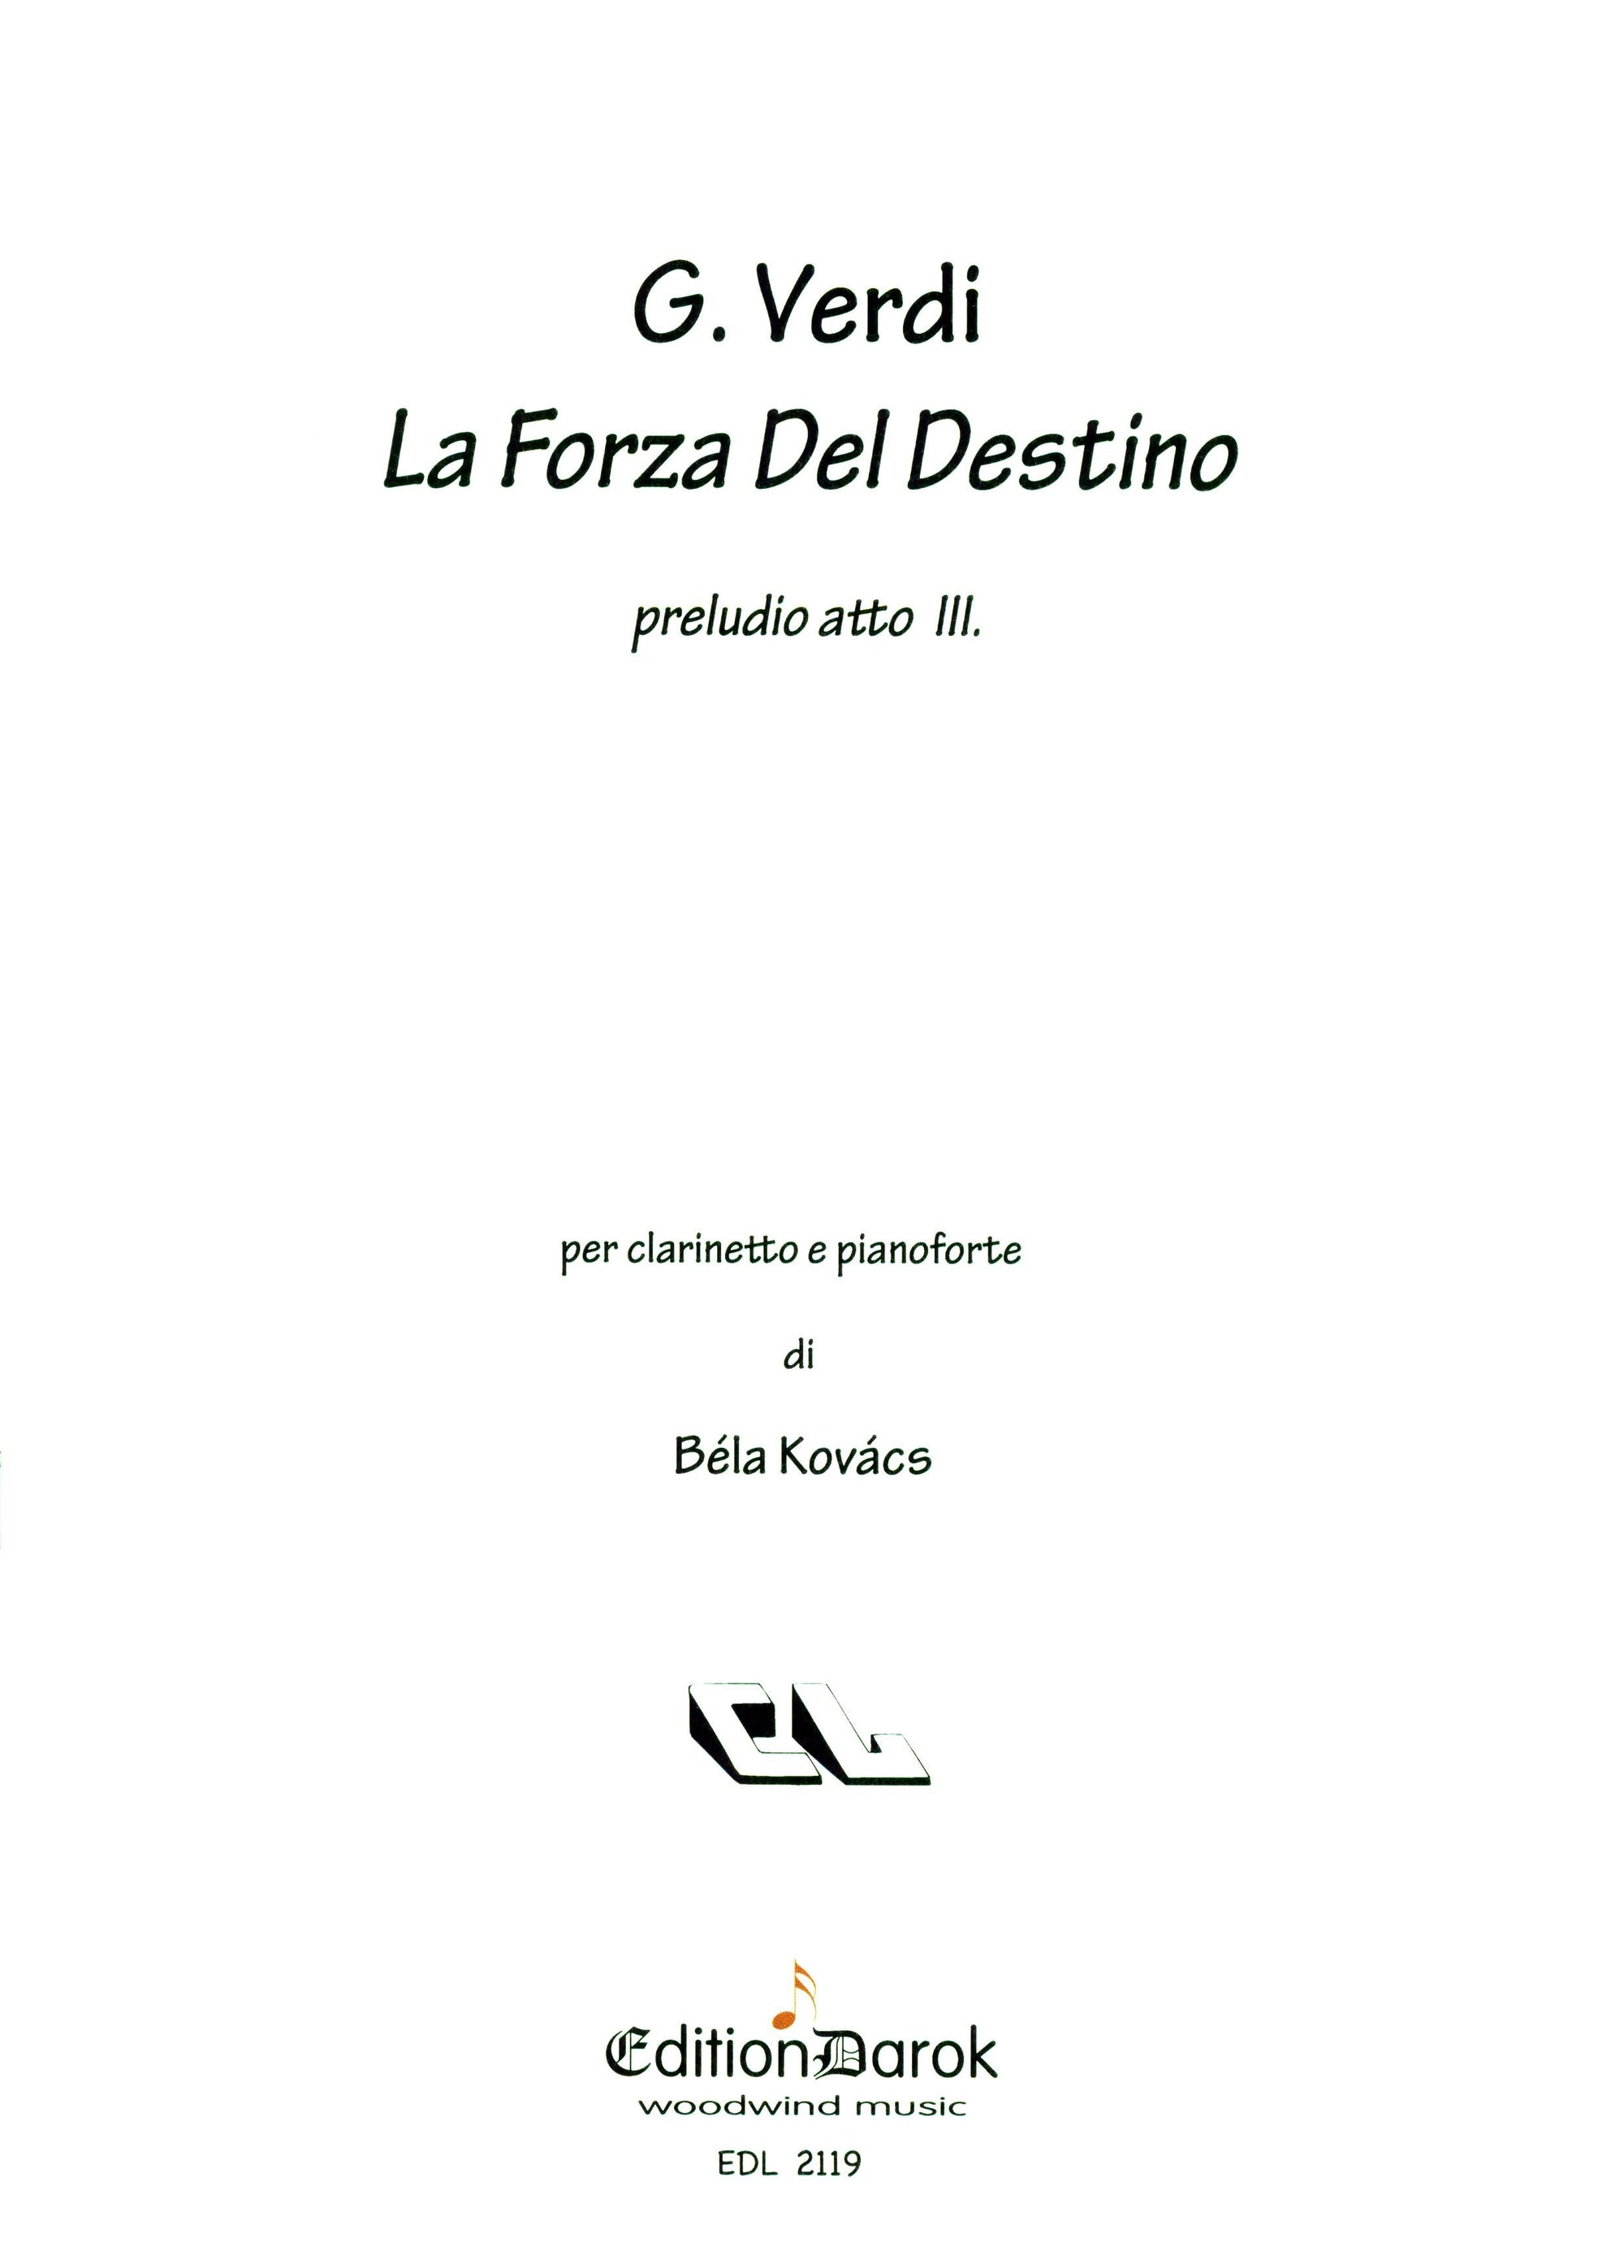 Verdi: Prelude to Act 3 of La forza del destino (arr. for clarinet)